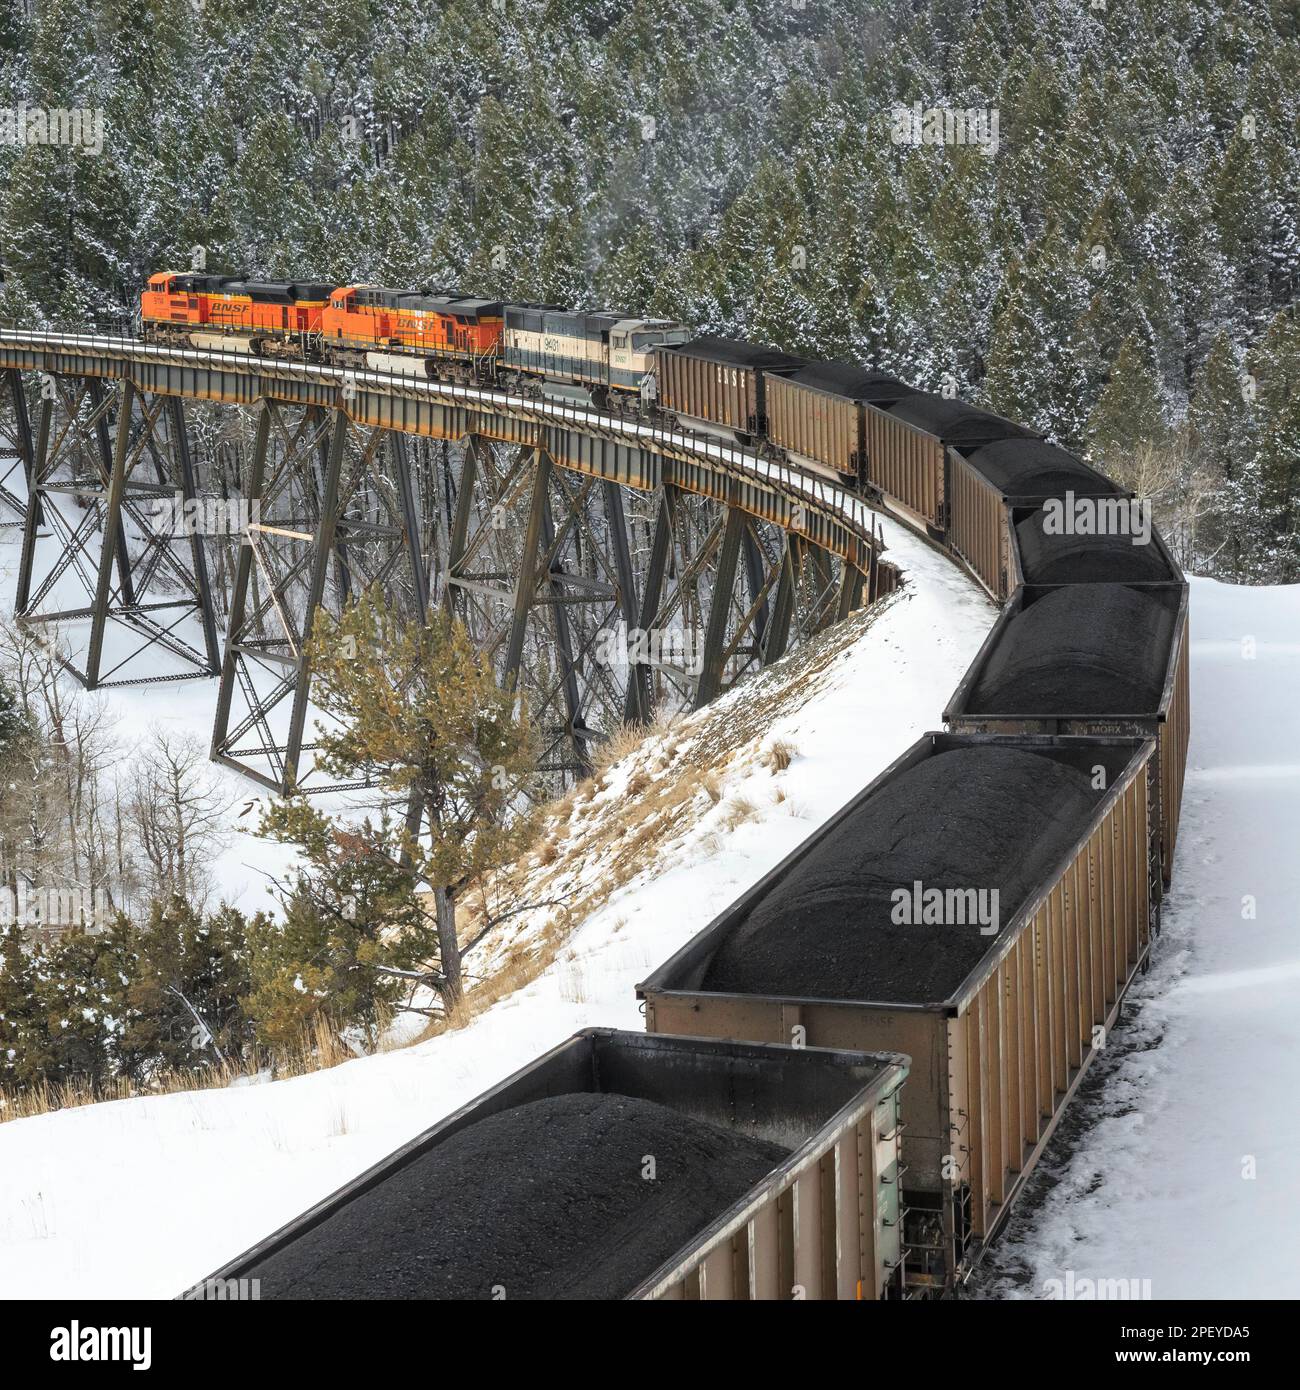 en hiver, prenez un train transportant du charbon au-dessus du tréteau sous le col de mullan près d'austin, montana Banque D'Images